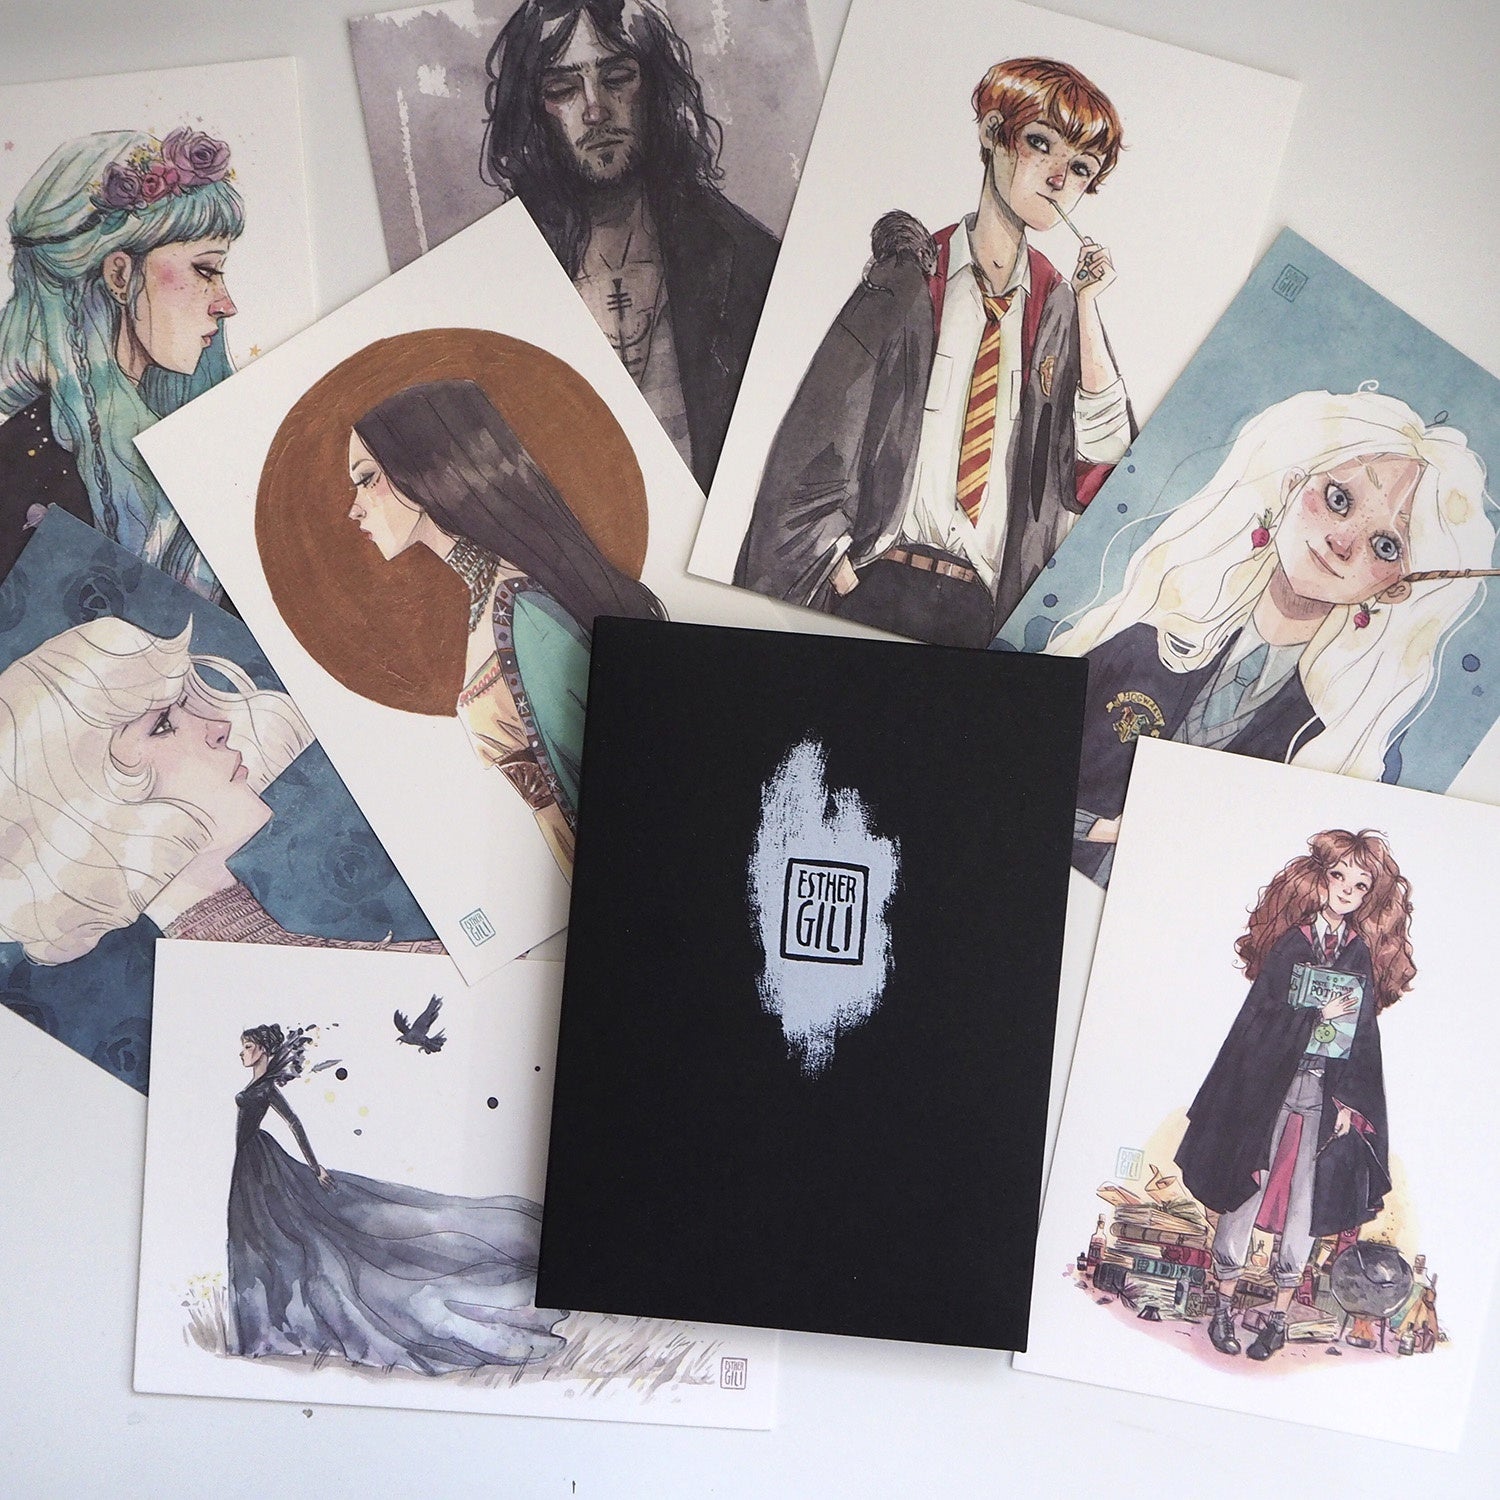 Pack negro con ocho postales de la ilustradora Esther Gili, entre las que destacan muchos personajes de la saga Harry Potter